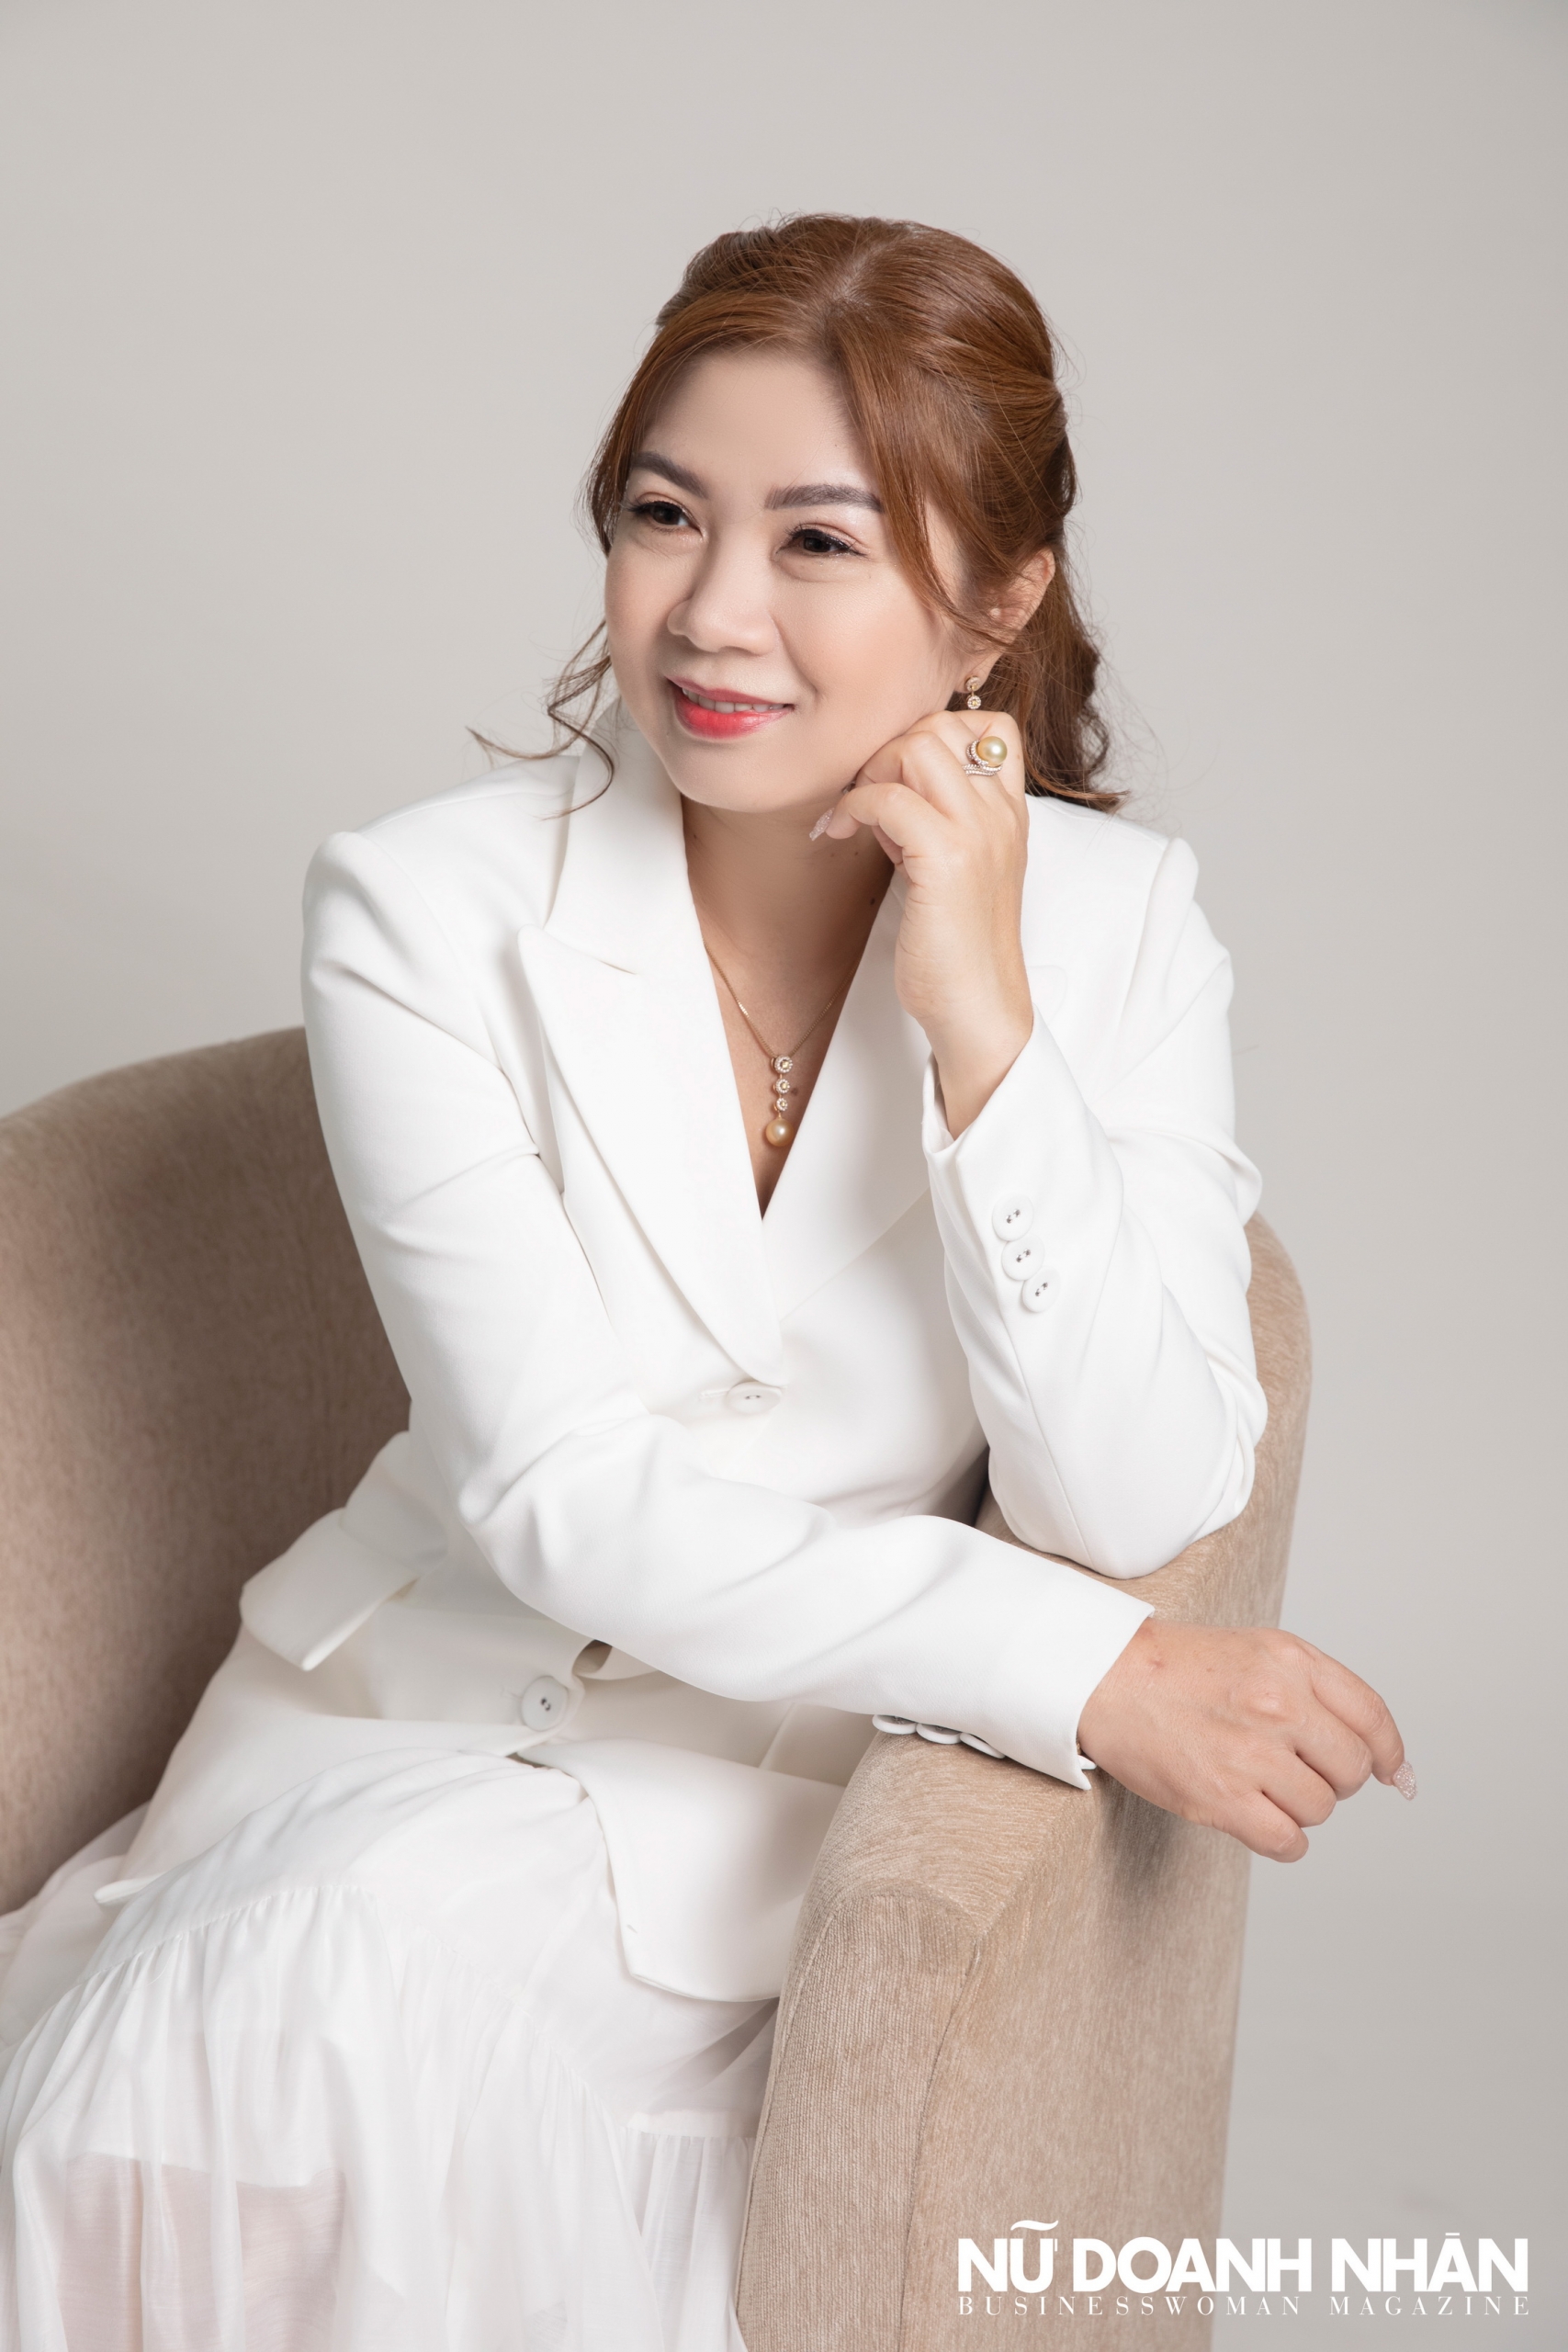 Phỏng vấn nữ doanh nhân Phạm Thị Ngọc Hiền công ty Kỳ Phong tài chính cá nhân khởi nghiệp triệu đô